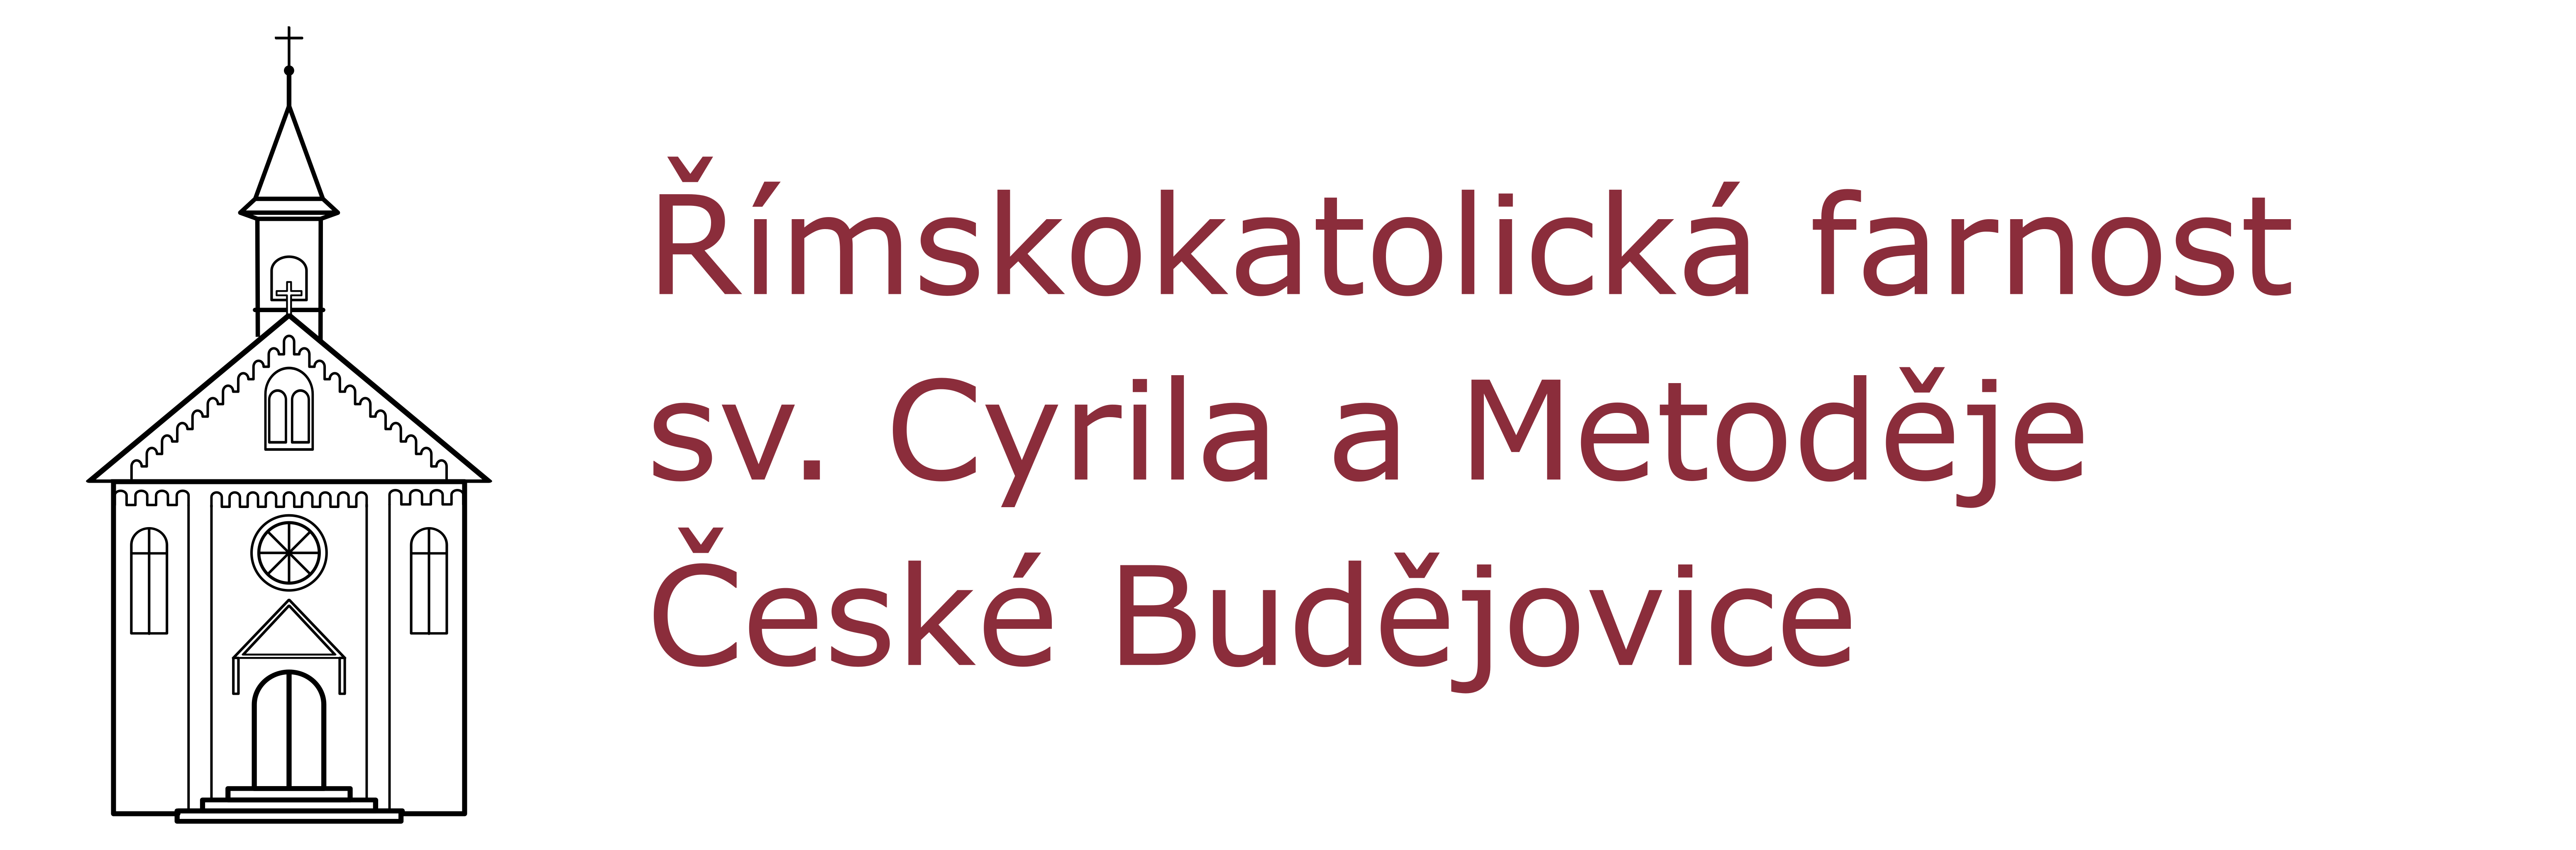 Logo Kalendář - Římskokatolická farnost sv. Cyrila a Metoděje České Budějovice - Suché Vrbné